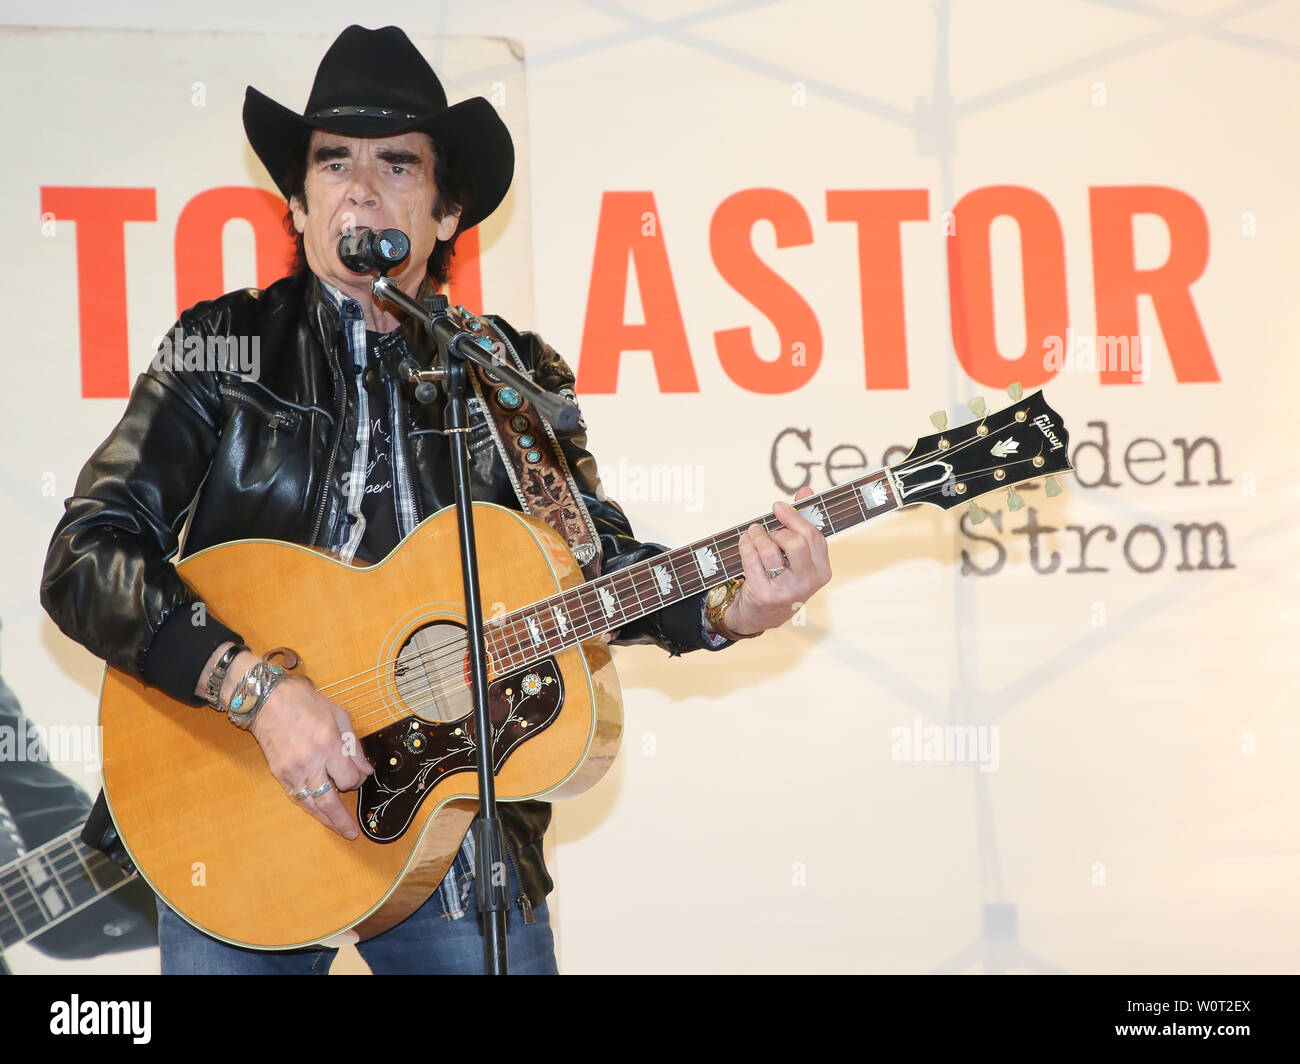 Tom Astor bei einem Live-Auftritt mit Autogrammstunde am 03.03.2018 in Magdeburg Stock Photo